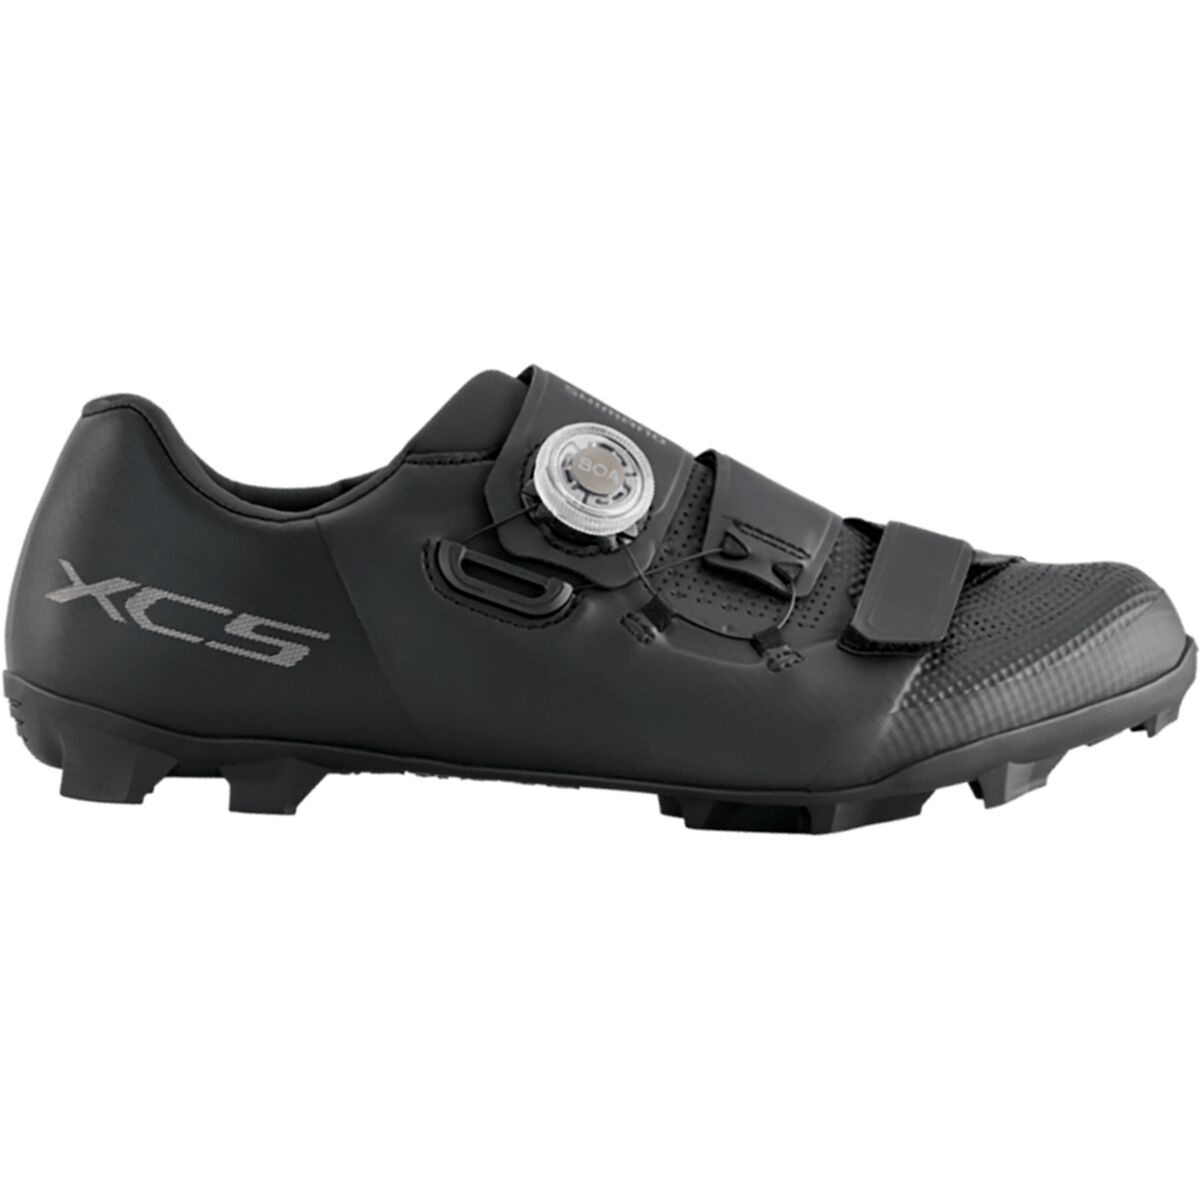 Shimano XC502 Wide Cycling Shoe - Men's